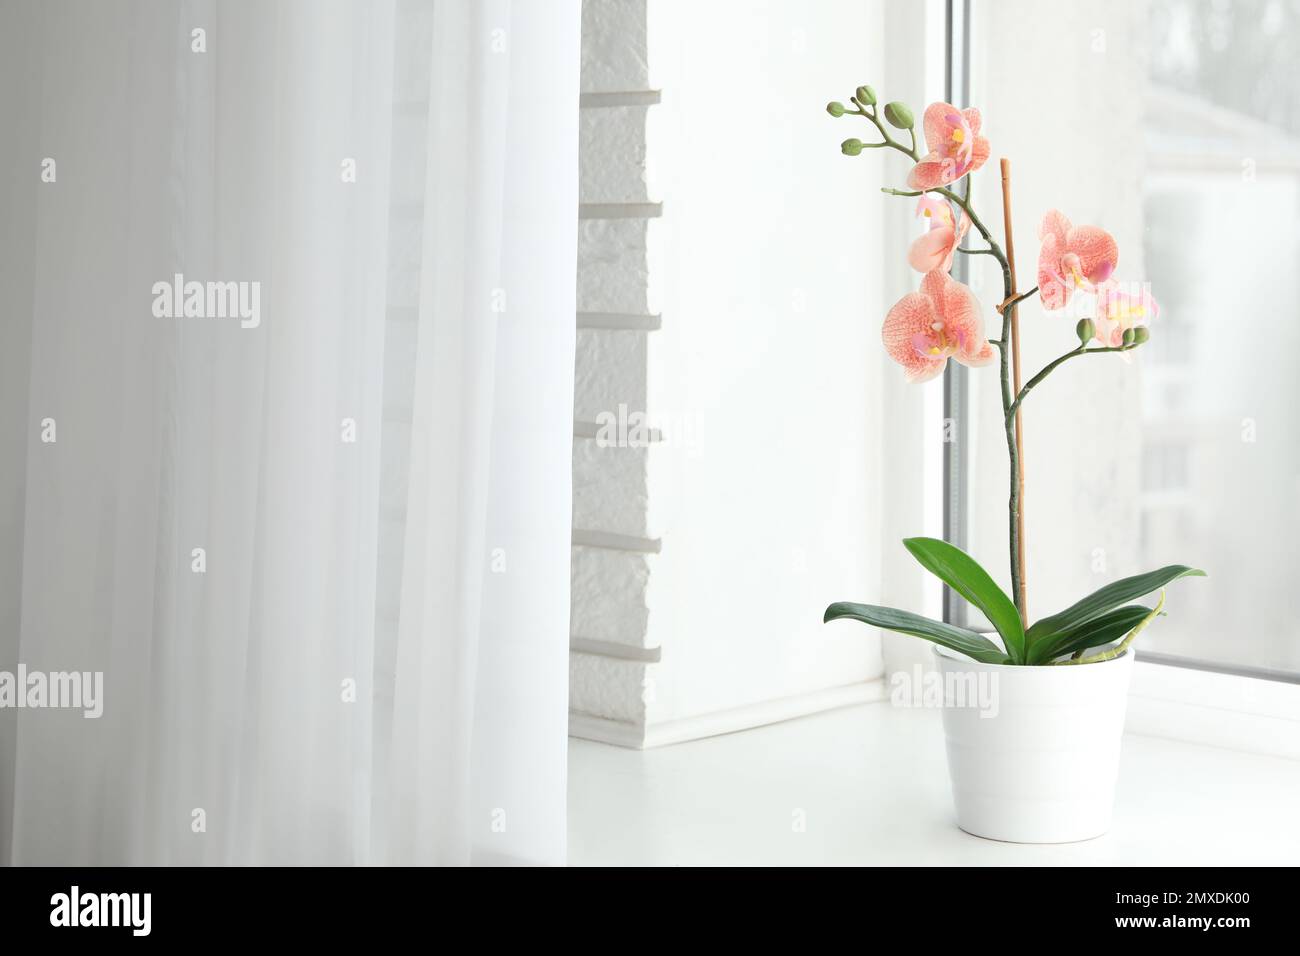 Belle plante artificielle en pot de fleur sur le seuil de la fenêtre. Espace pour le texte Banque D'Images